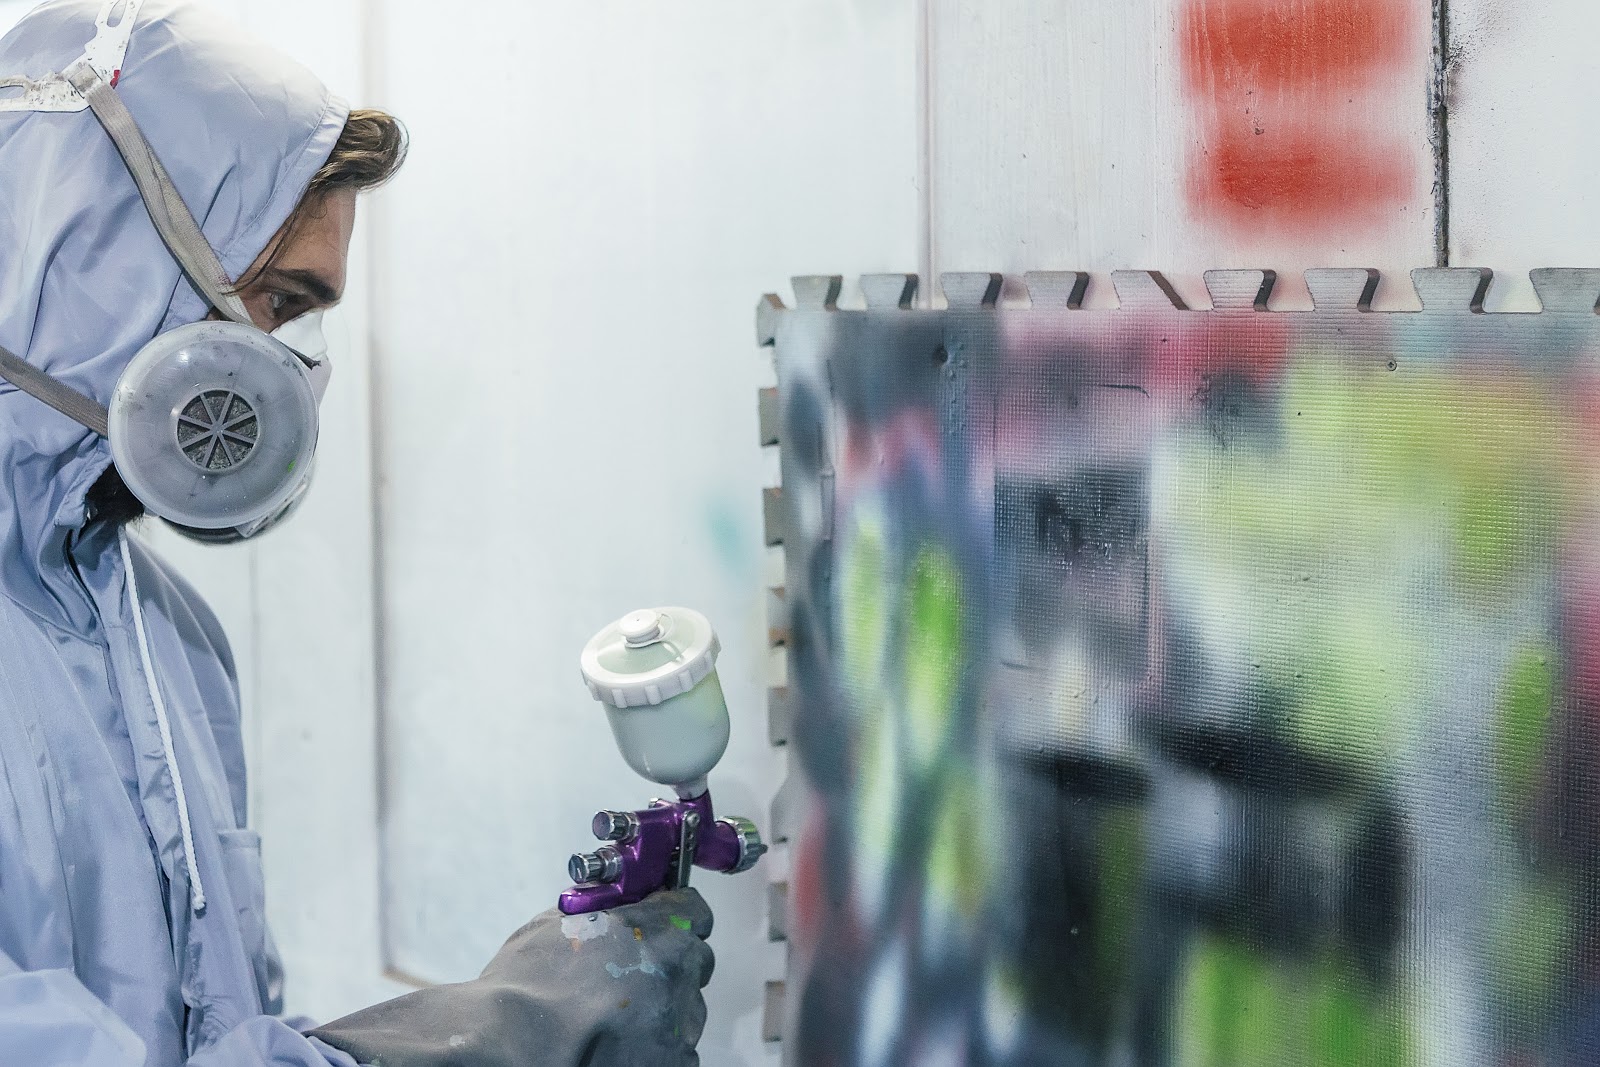 Malowanie natryskowe ścian — wszystko, co trzeba o tym wiedzieć